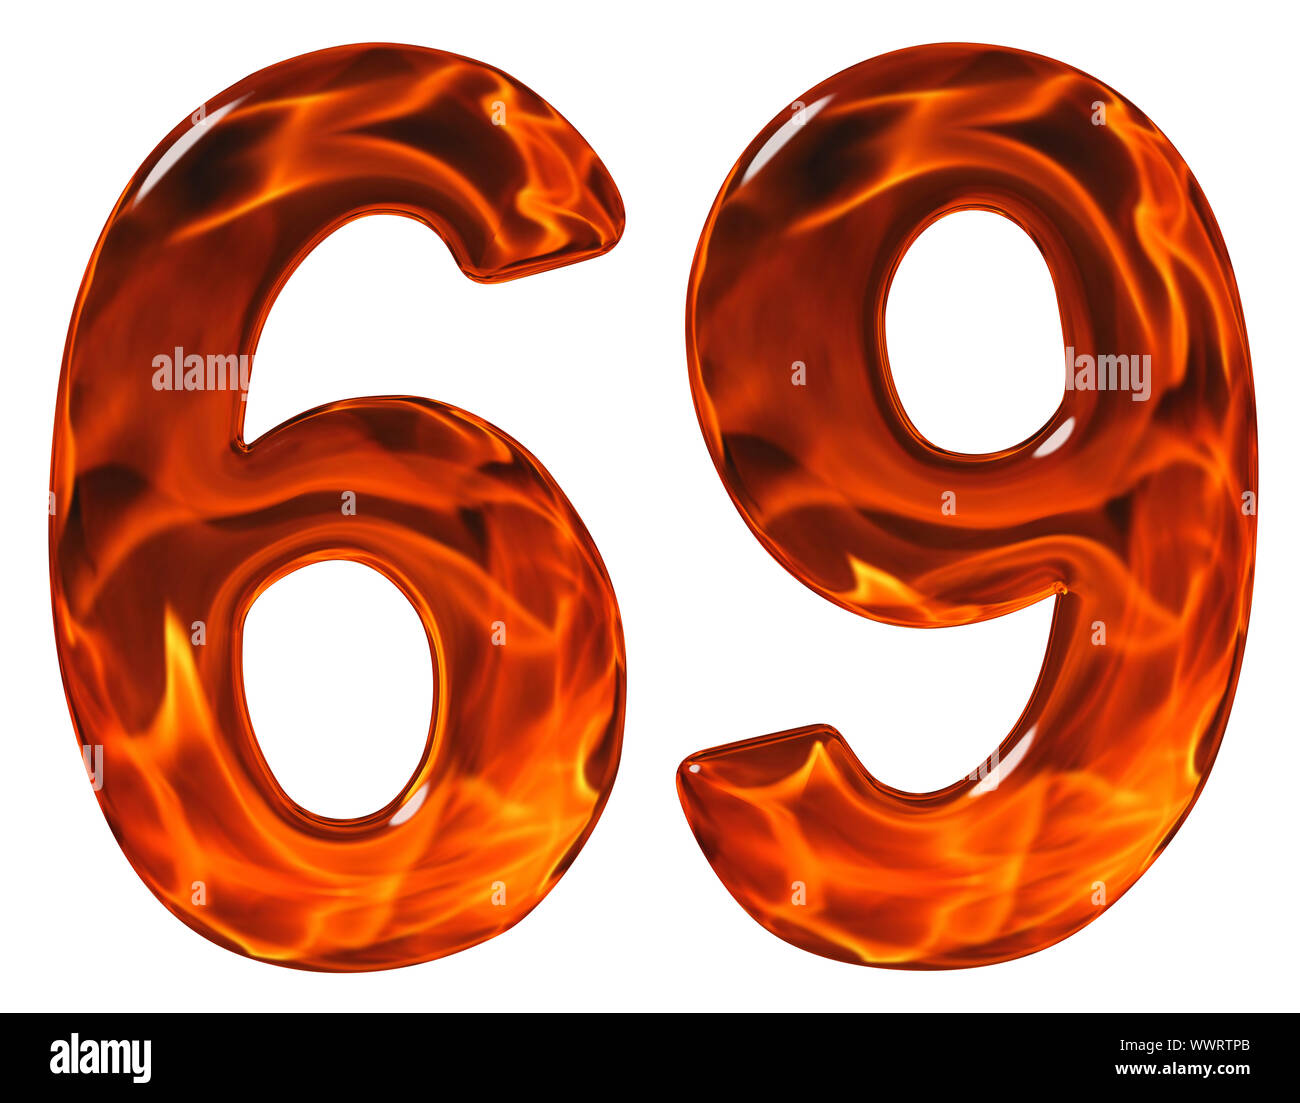 69, sessanta nove, con imitazioni di vetro e un fuoco ardente, isolato su sfondo bianco Foto Stock